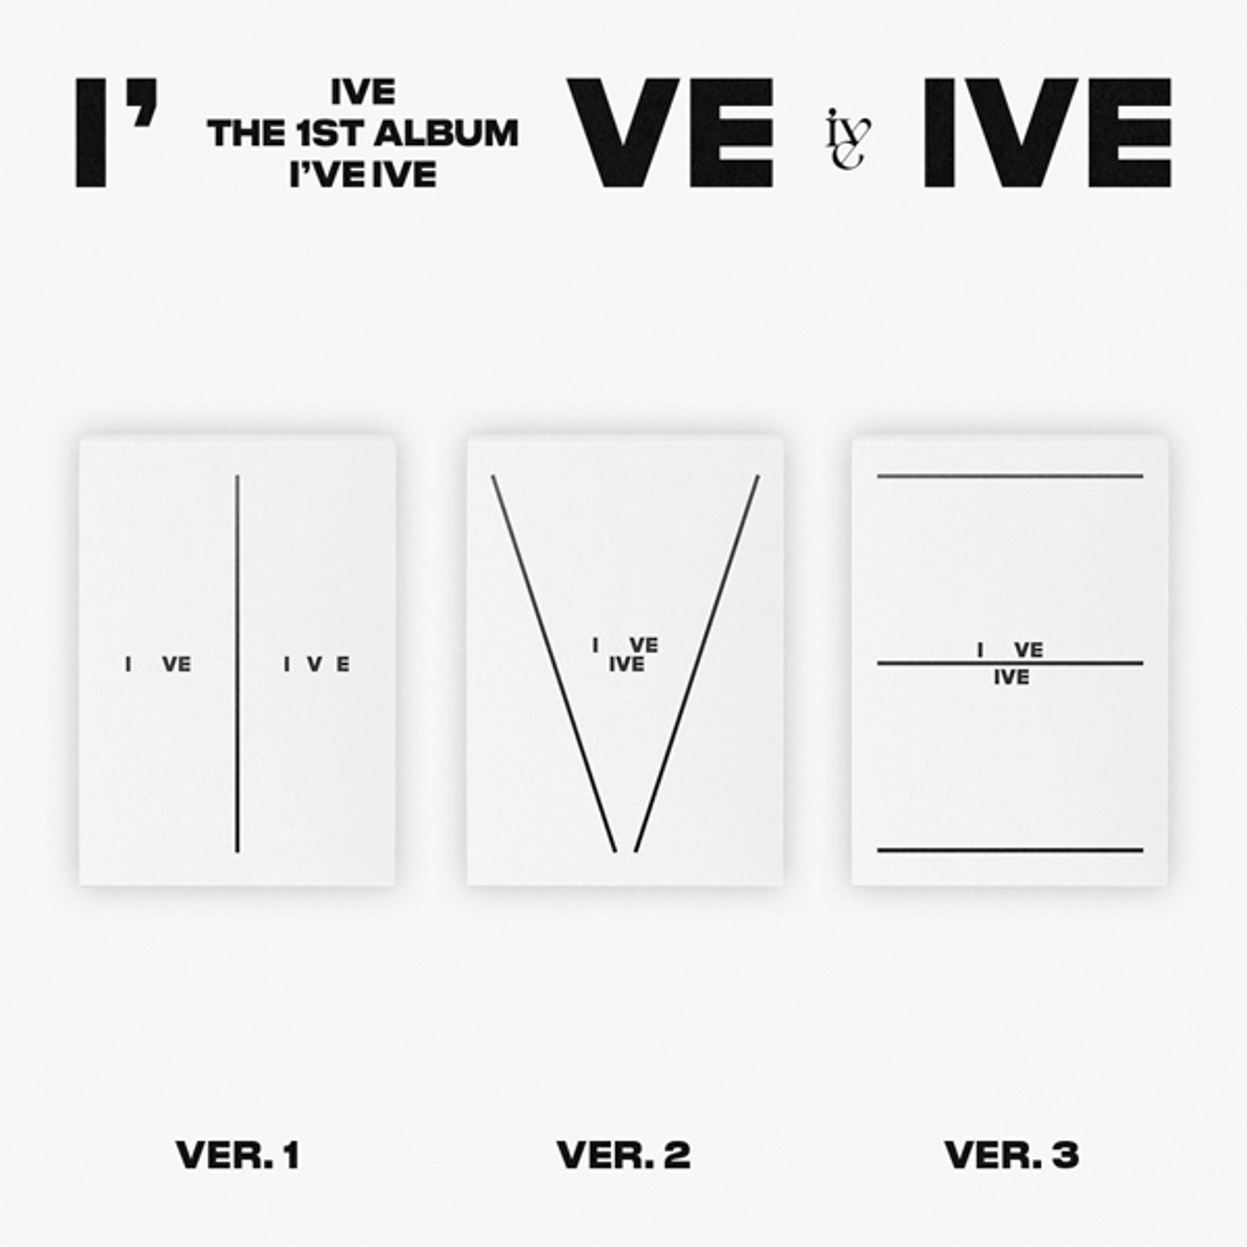 아이브 (IVE) - 정규앨범 1집 [I&#039;ve IVE] (랜덤버전)